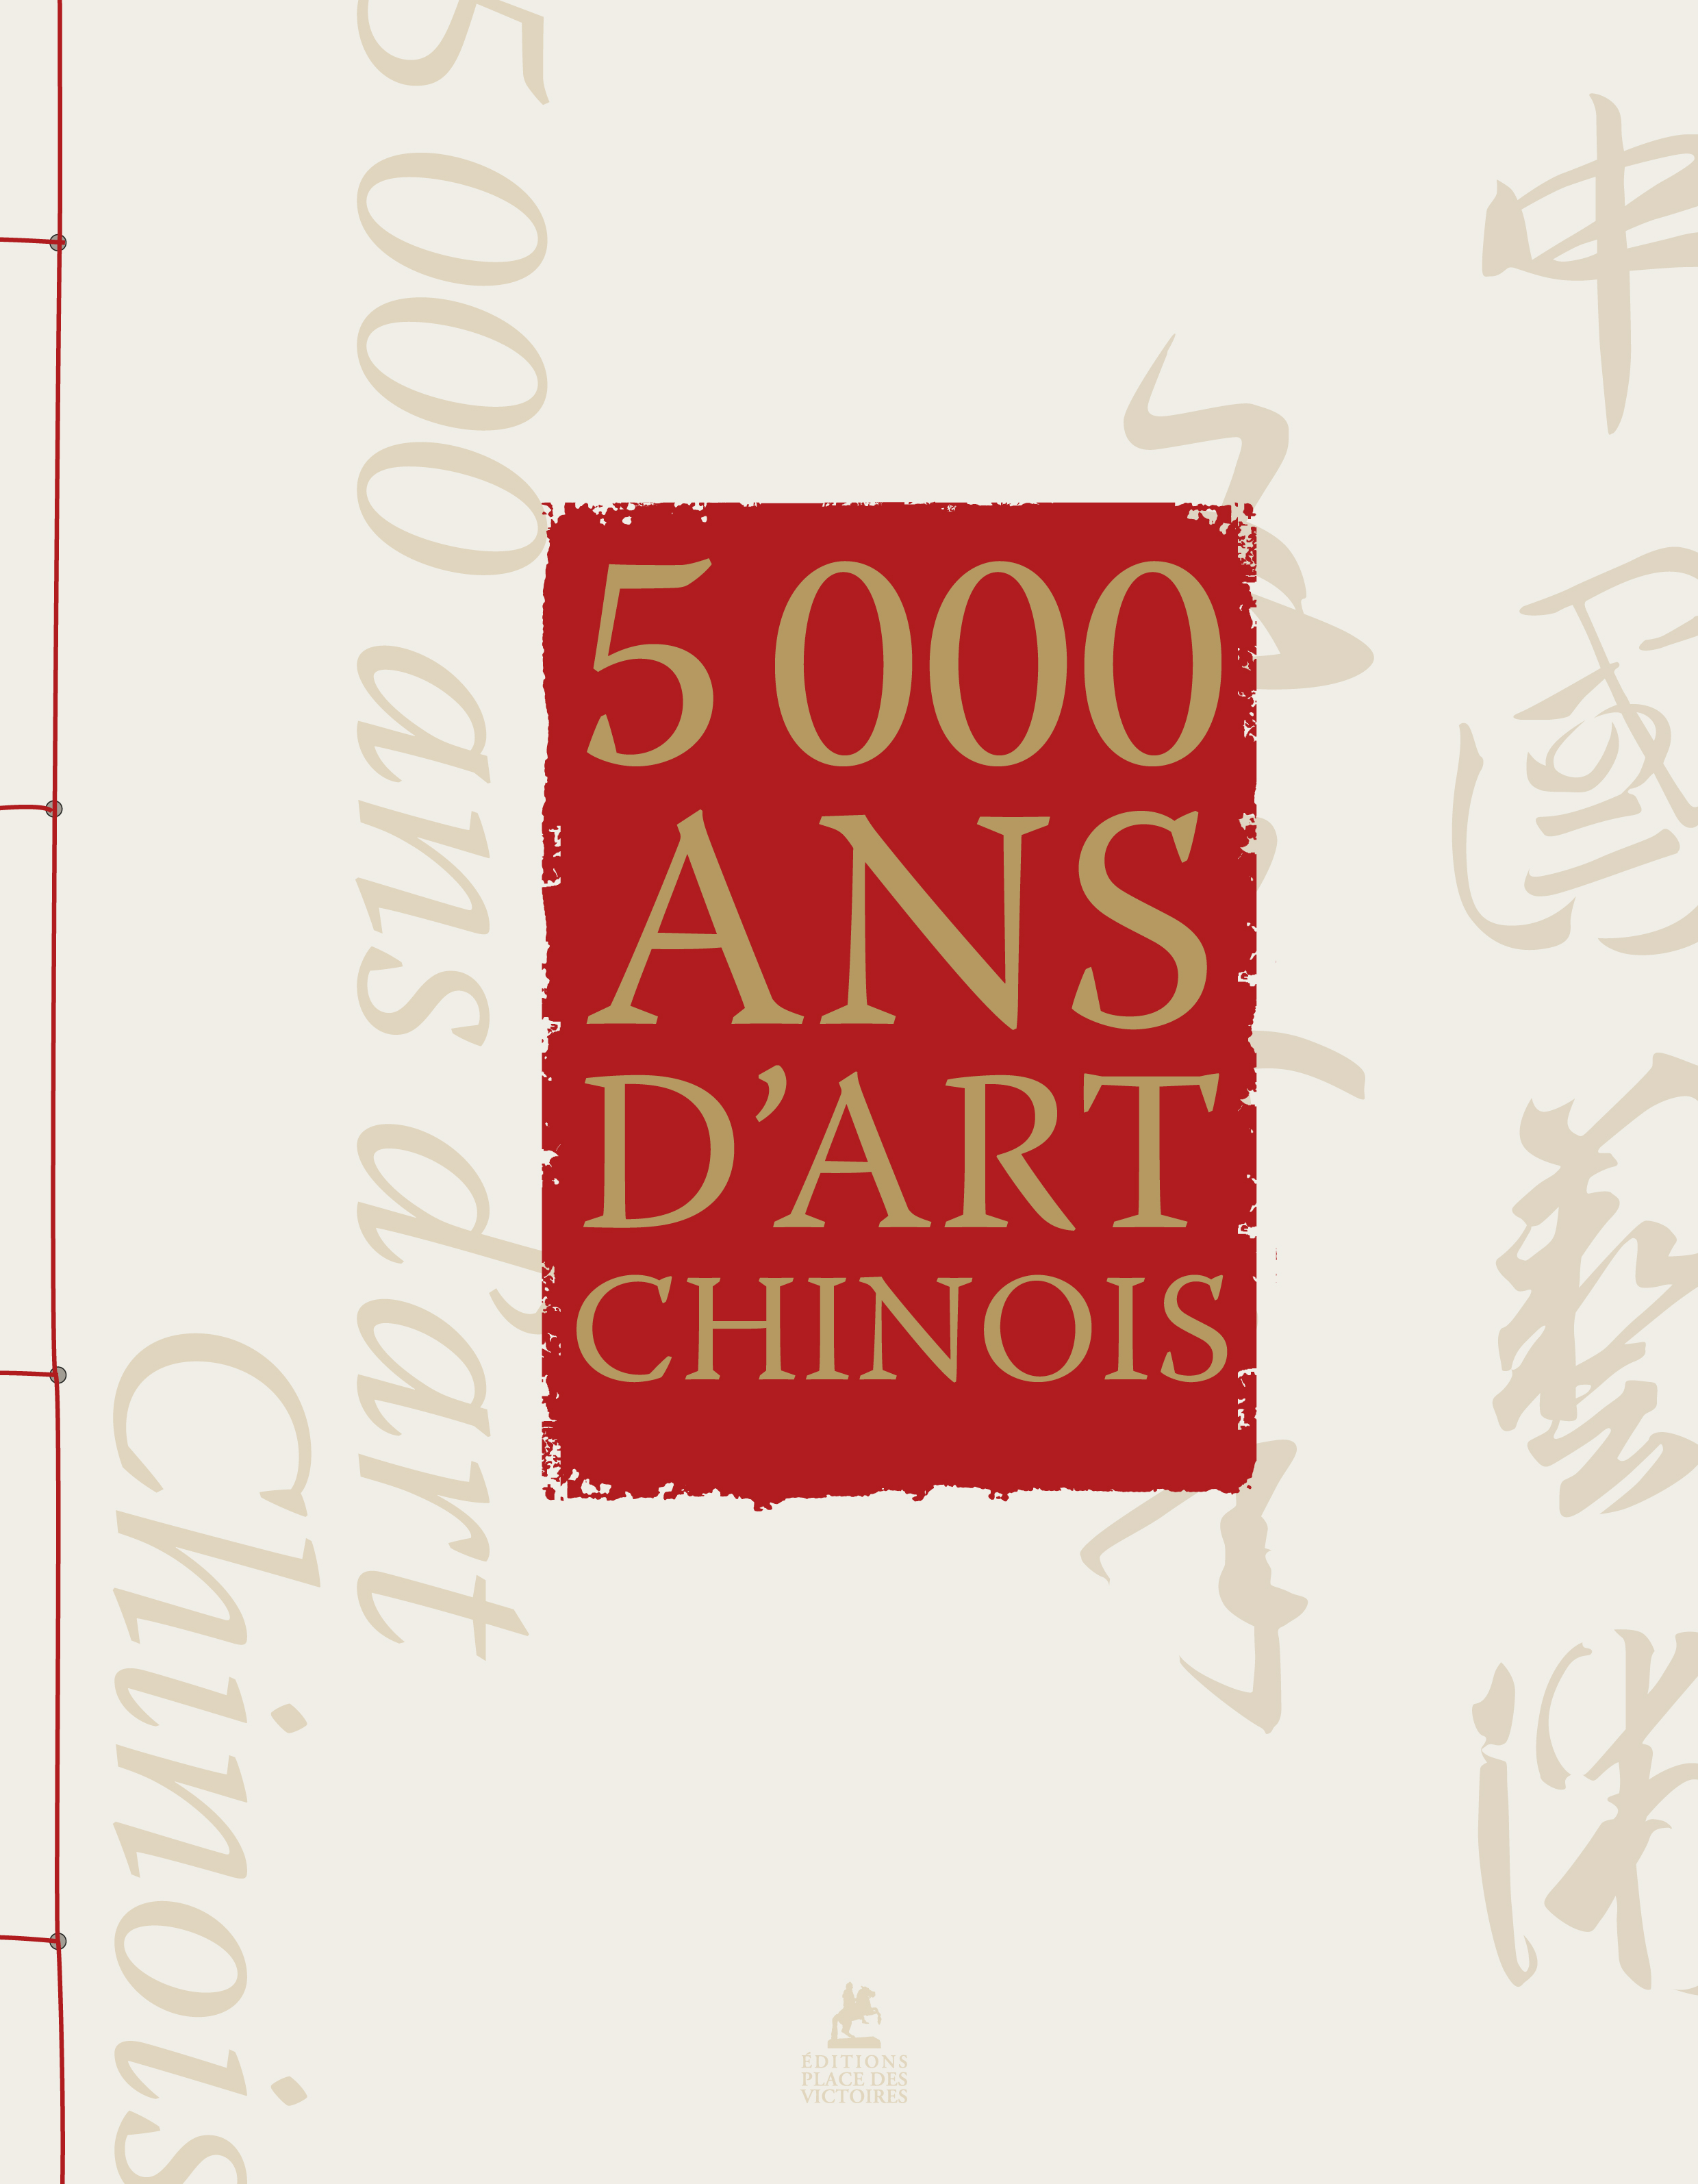 5000 ans d’art chinois sort aux éditions Place des Victoires.